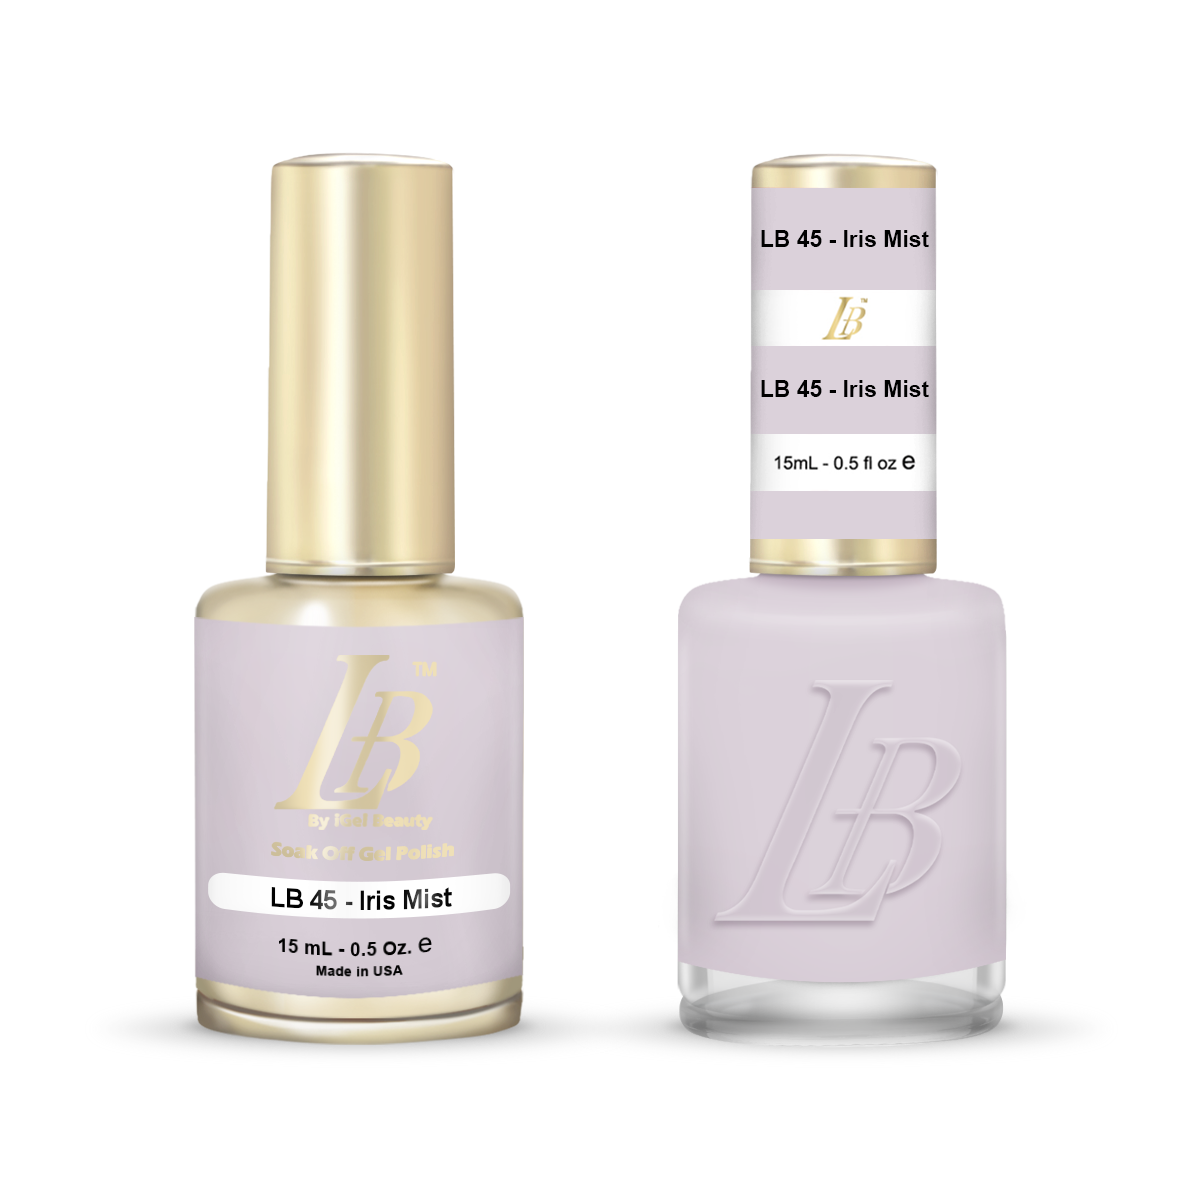 LB Duo - LB045 Iris Mist